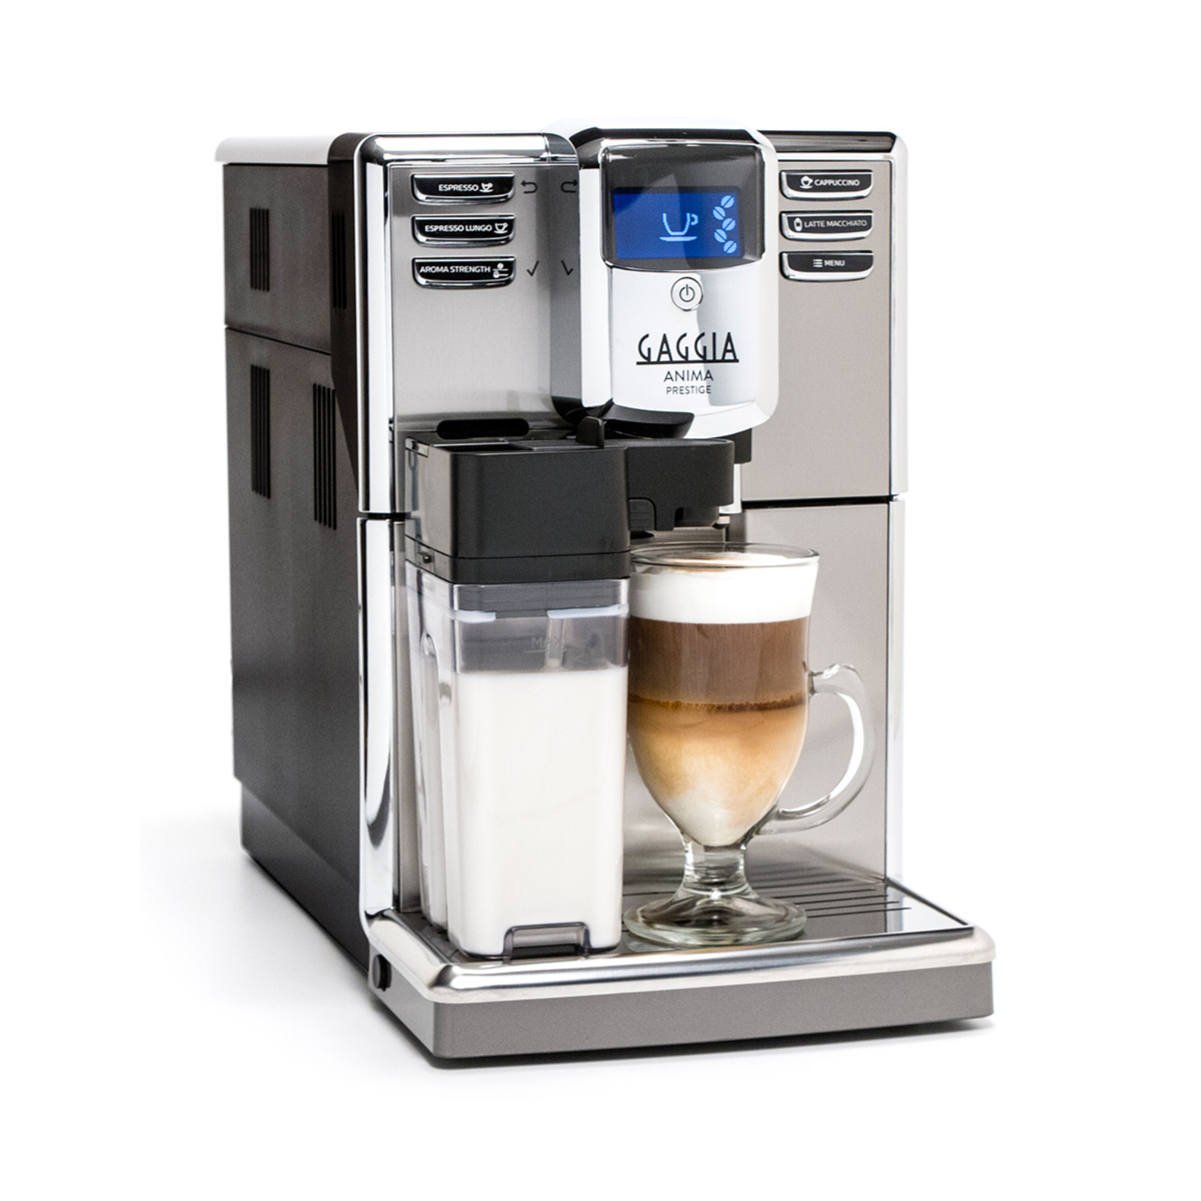 3 Gaggia Anima Prestige Automatic Coffee Machine